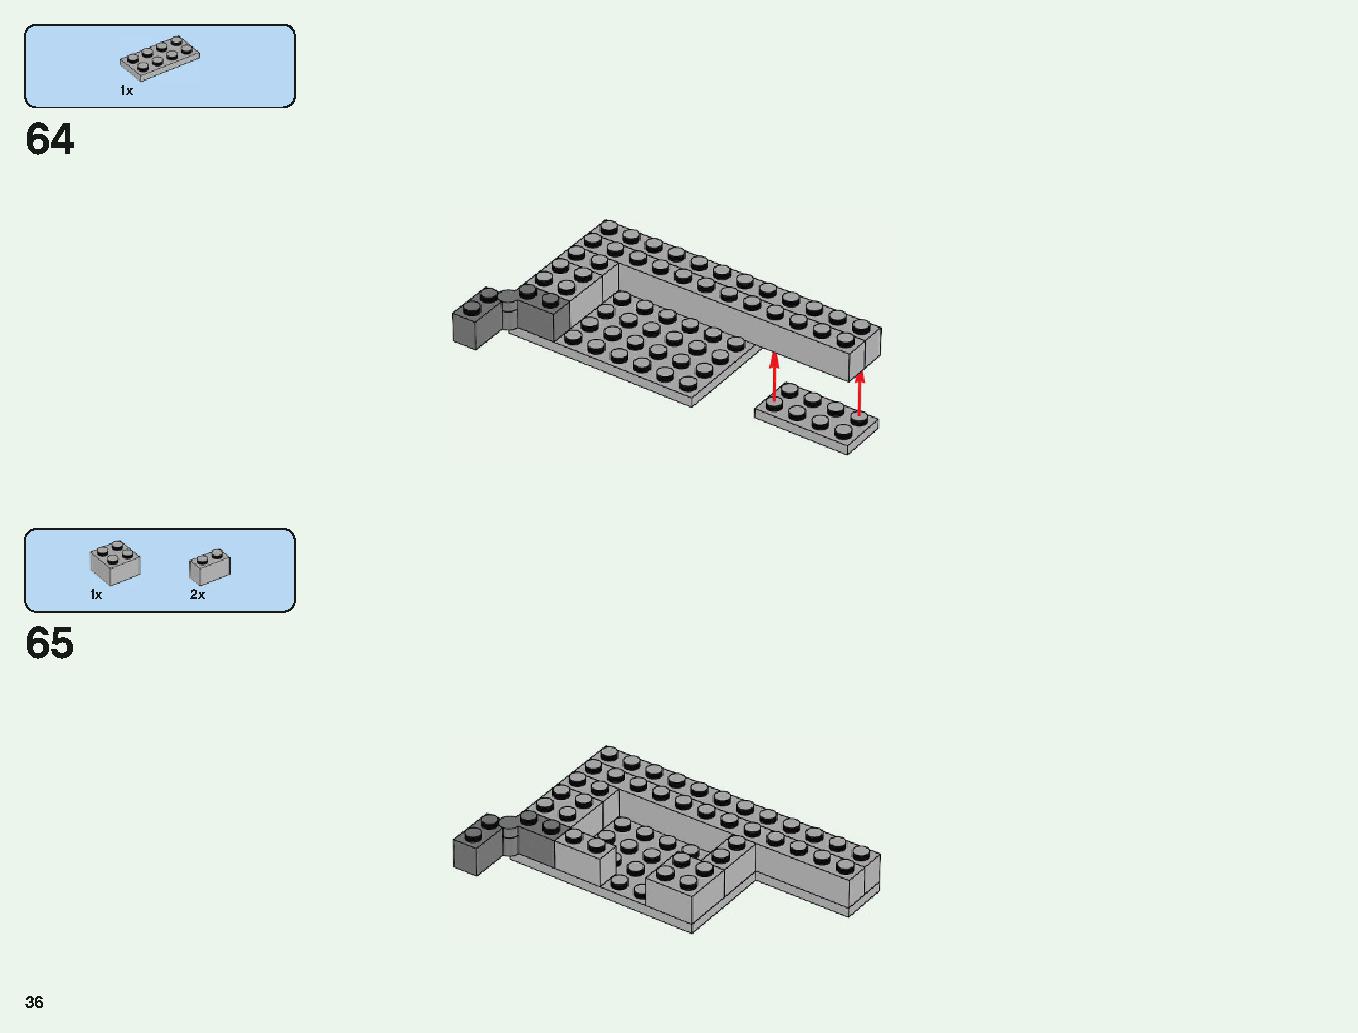 ベッドロックの冒険 21147 レゴの商品情報 レゴの説明書・組立方法 36 page